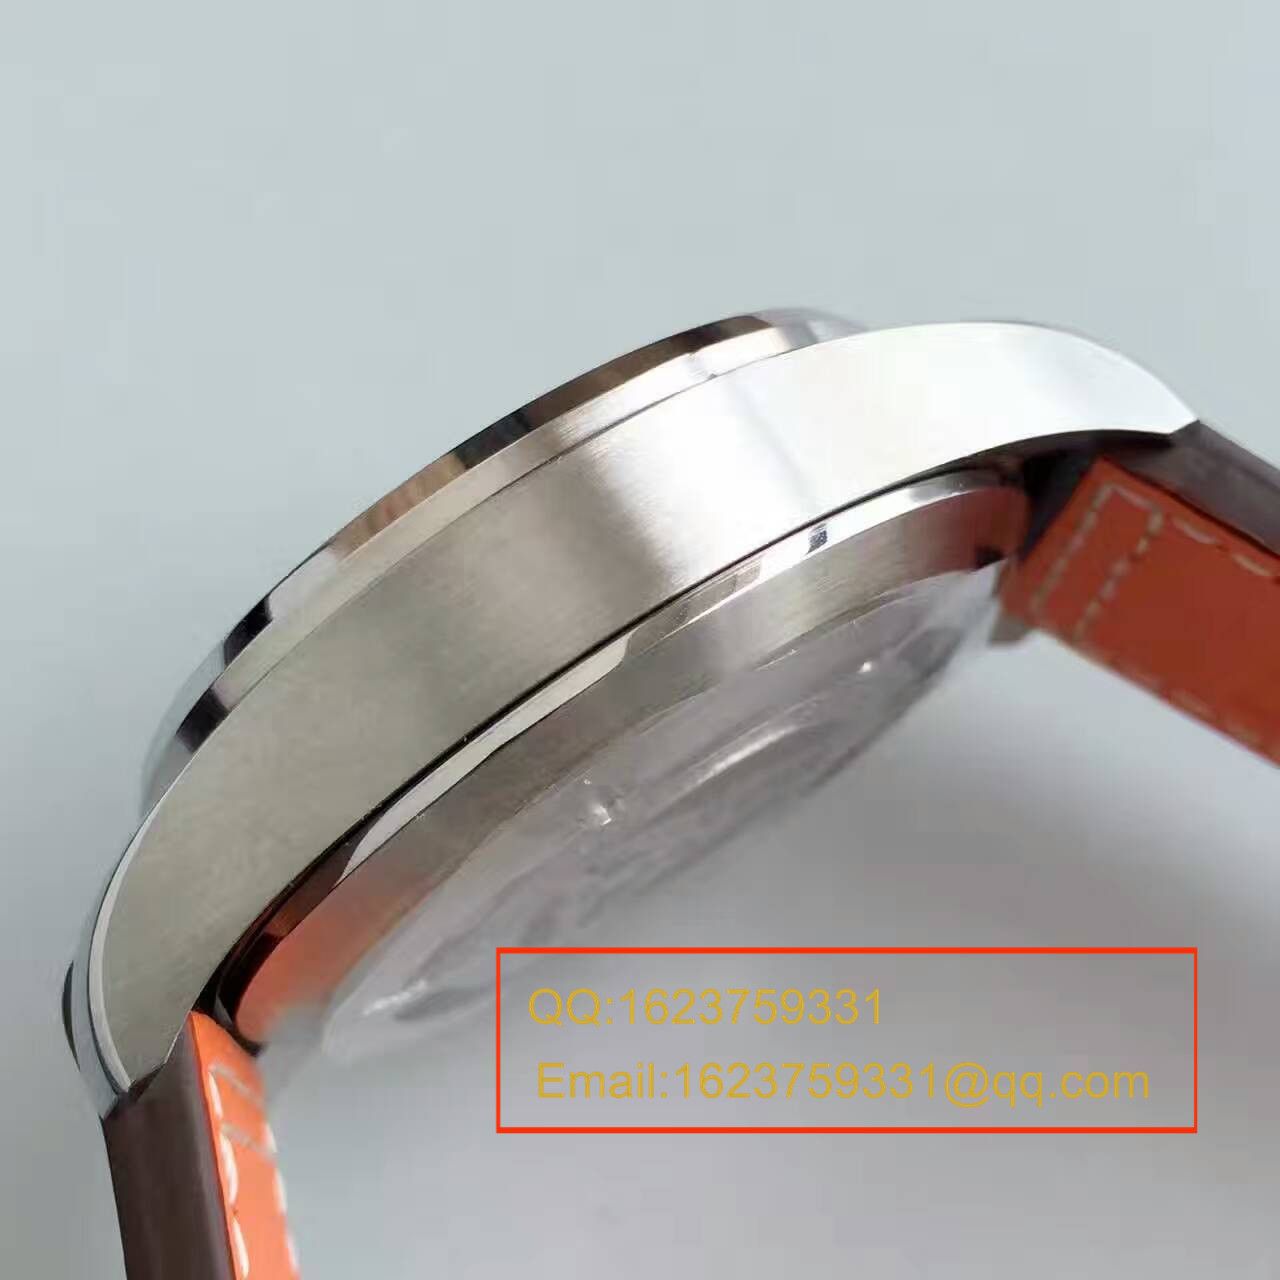 【ZF厂一比一复刻手表】万国CHRONOGRAPH飞行员系列IW377719腕表 皮带款 